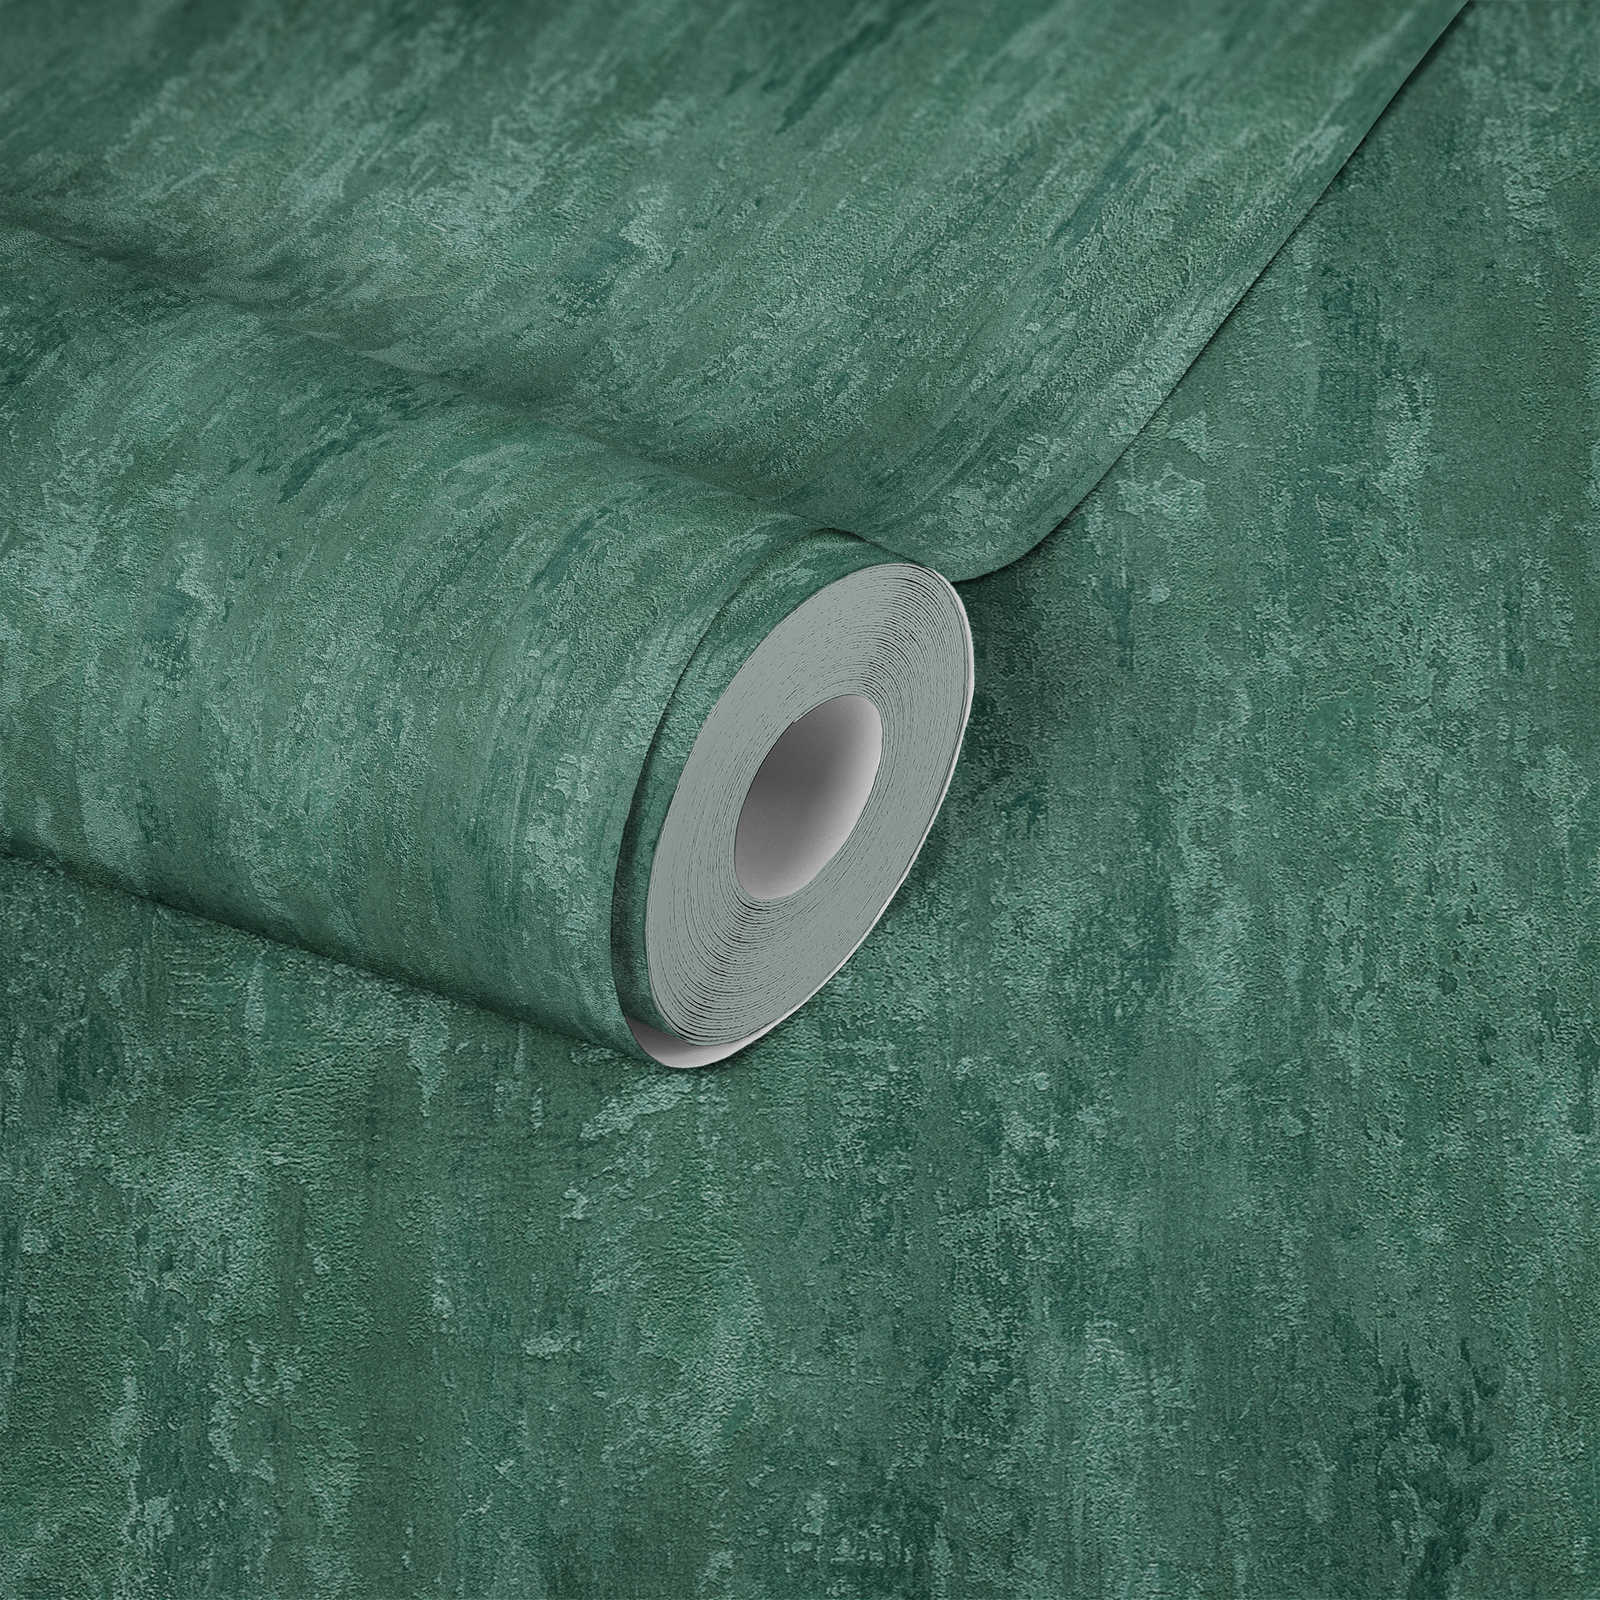             Tapete Industrial Stil mit Struktureffekt – Grün, Metallic
        